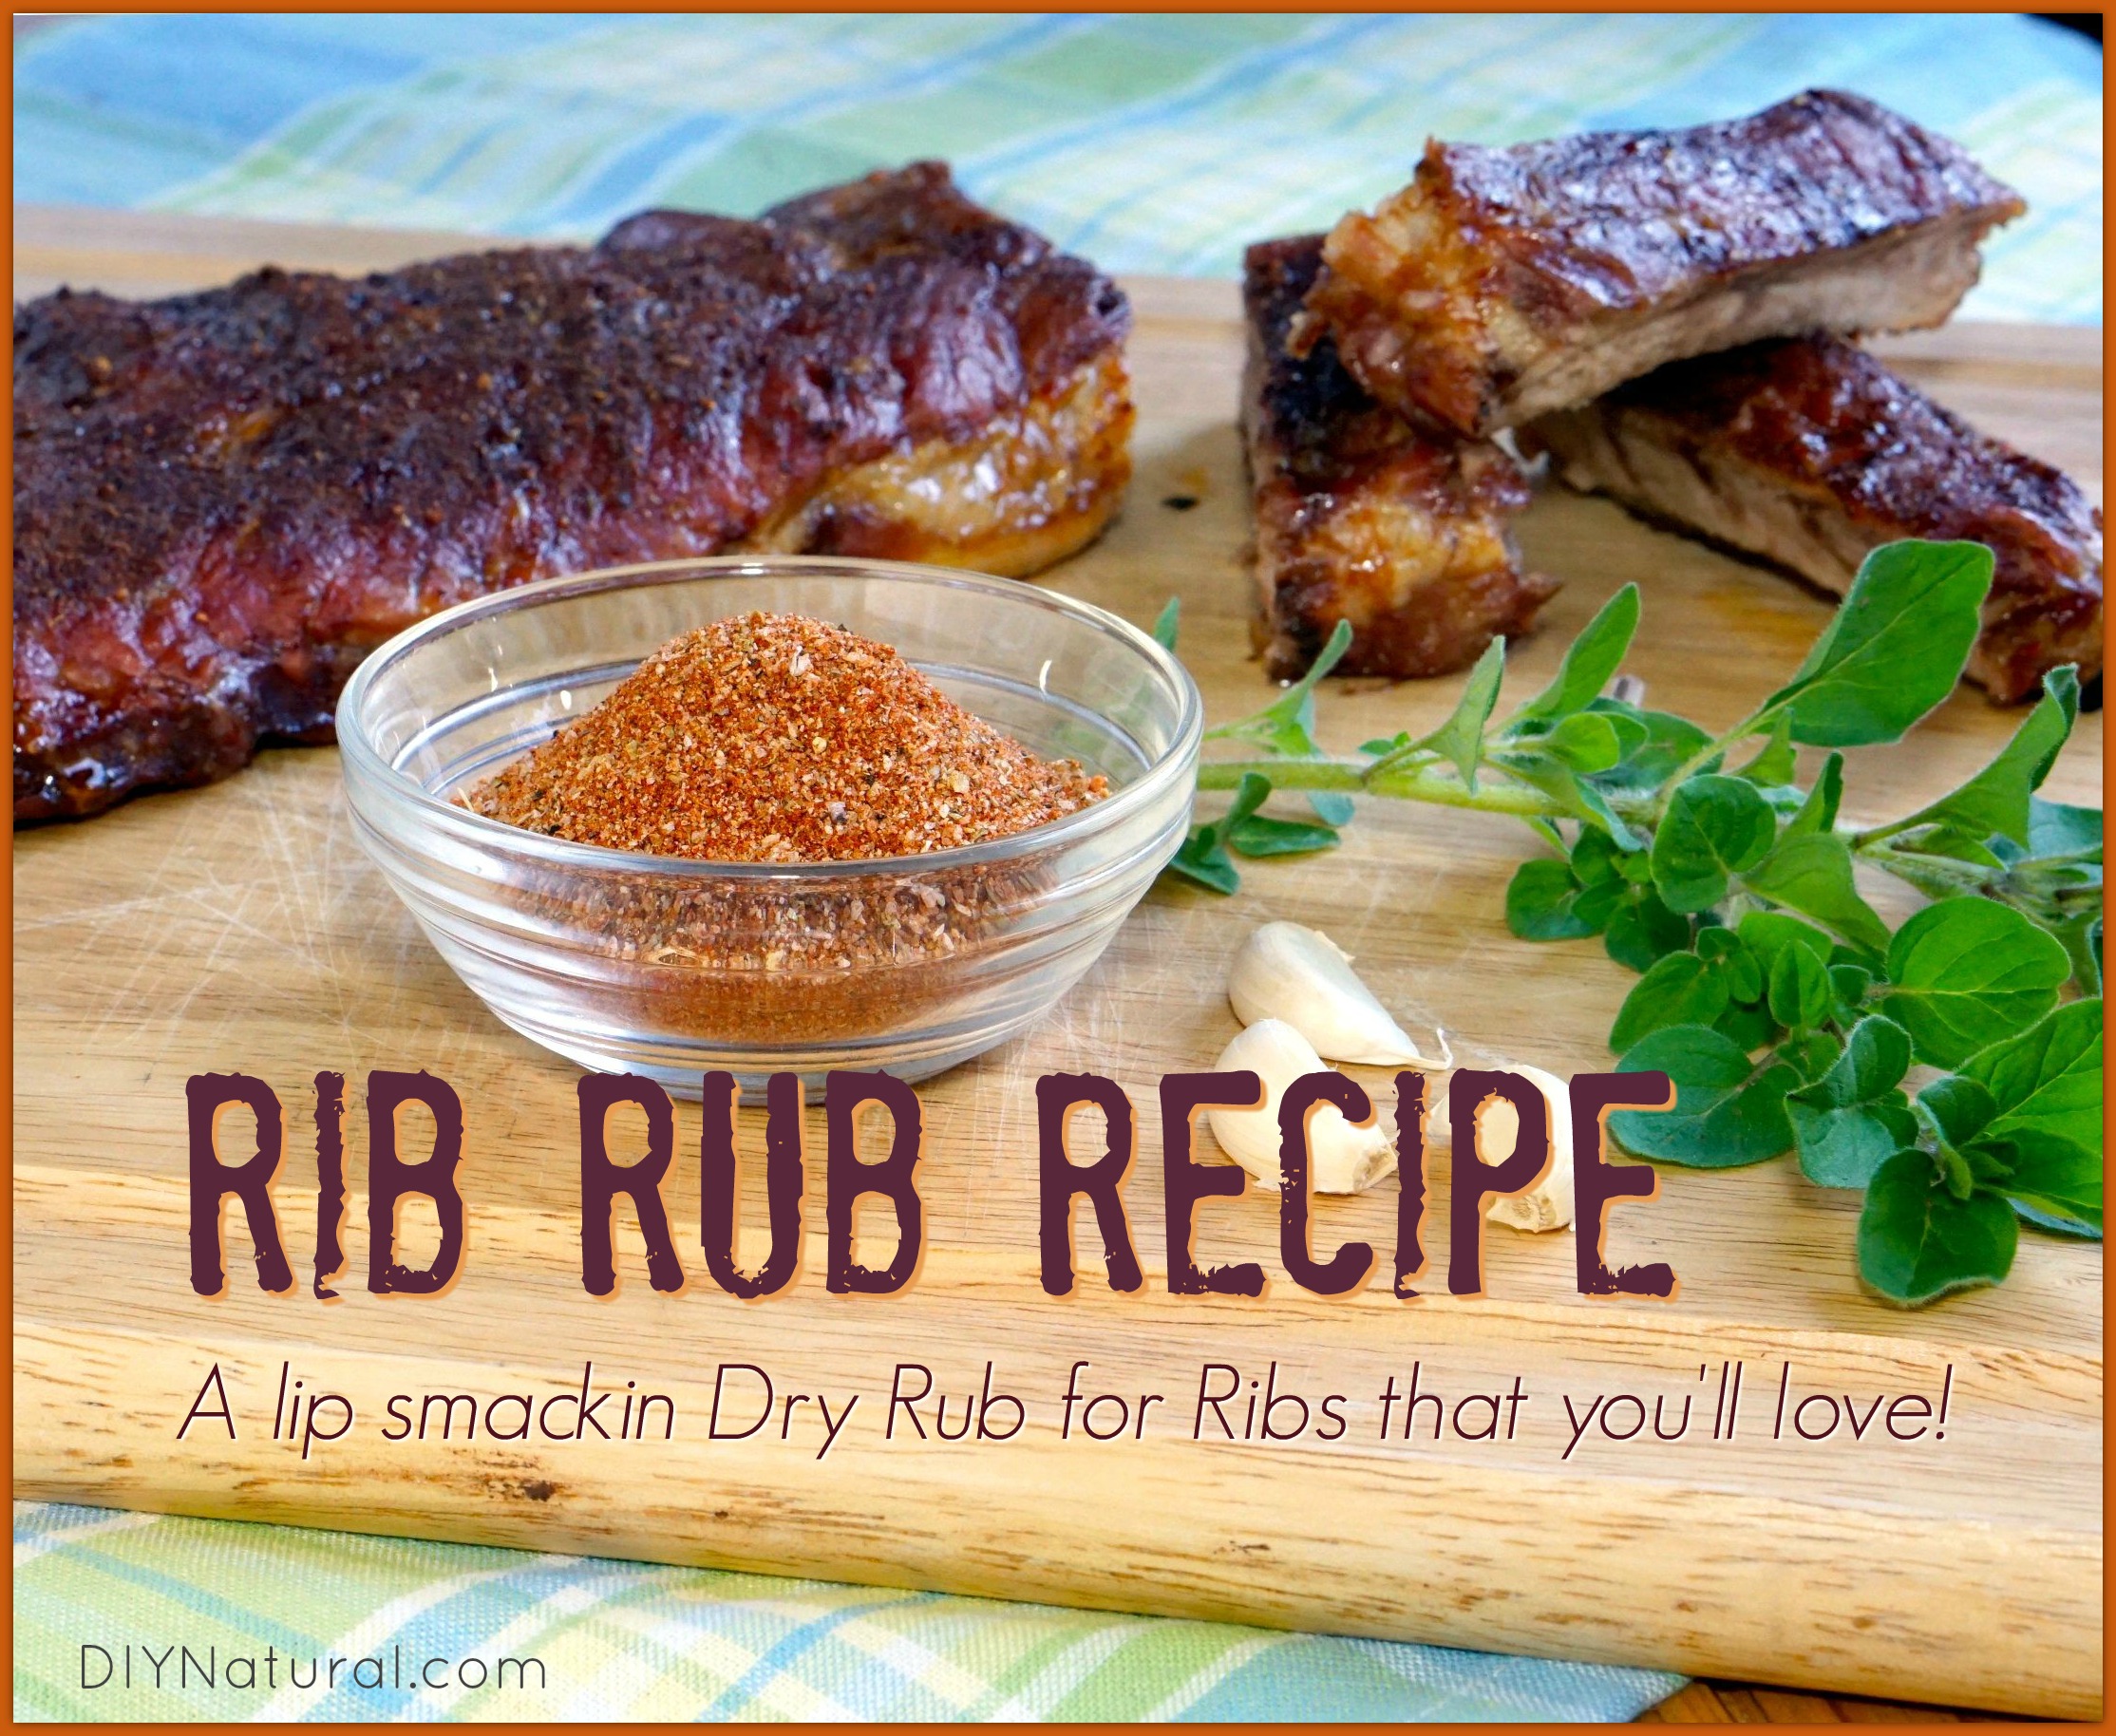 Dry Rub For Ribs Homemade Rib Rub Recipe With No Sugar,How To Make Fried Plantains Sweet